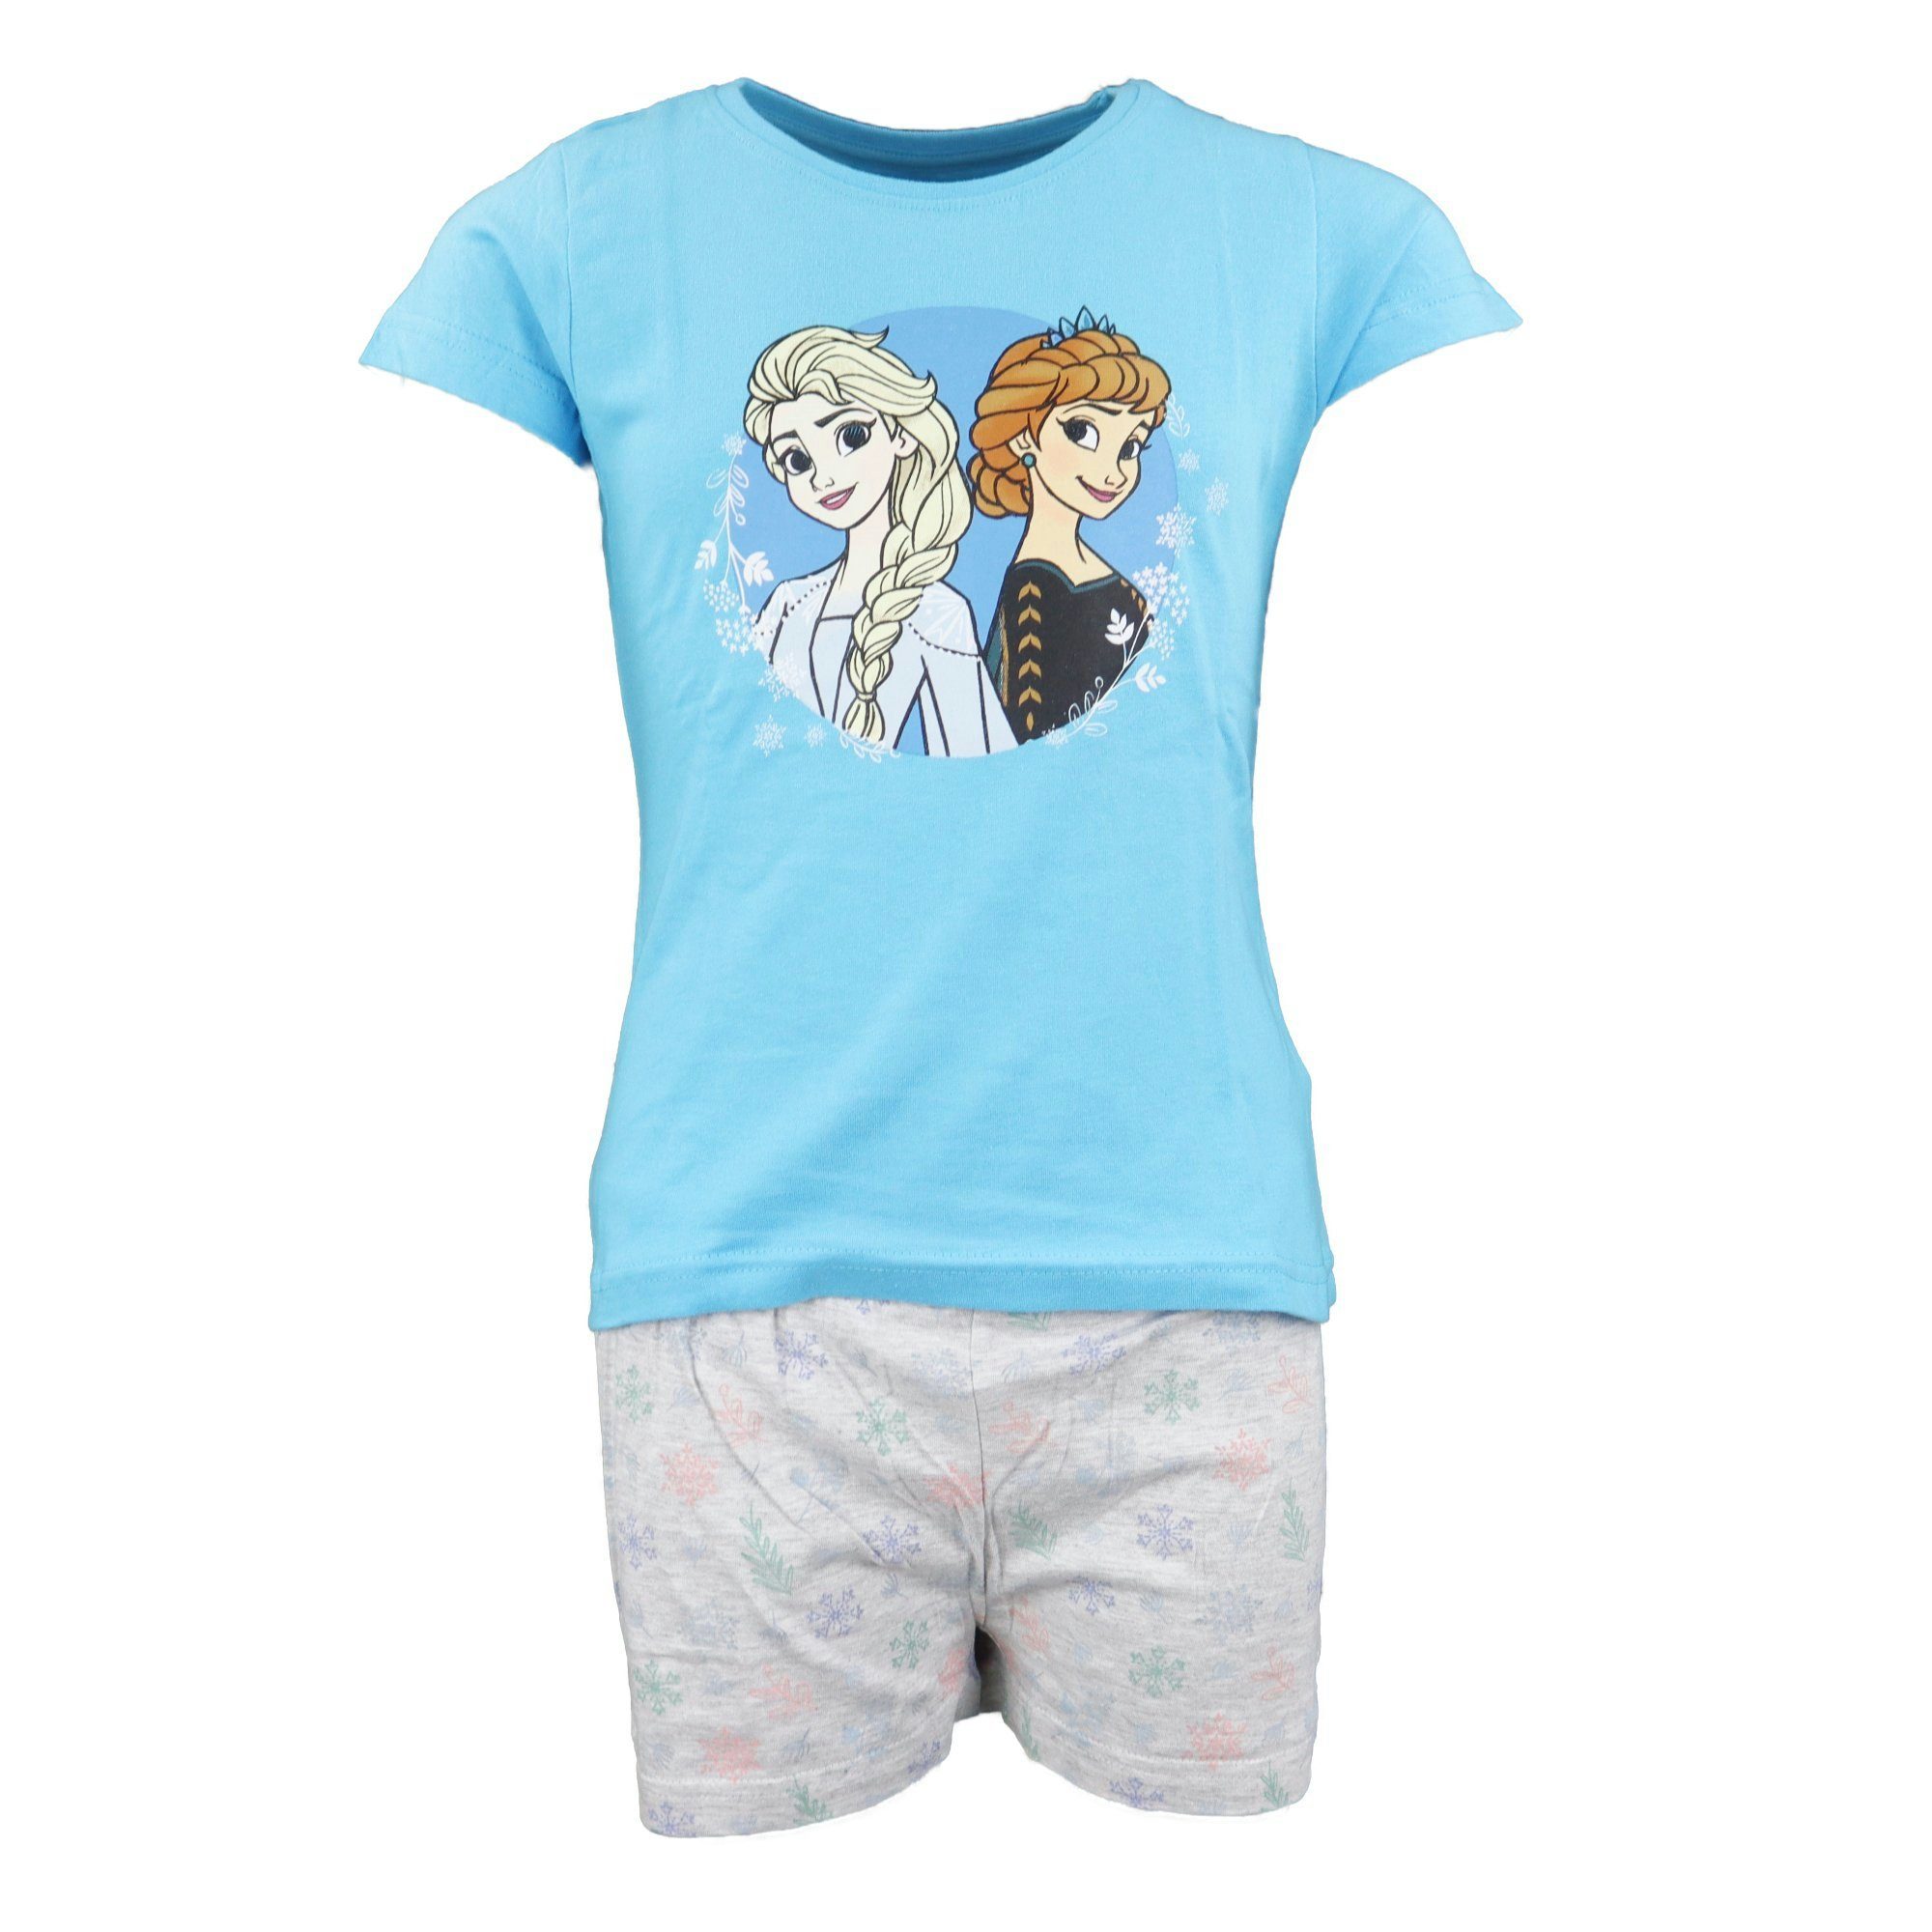 Disney Frozen Schlafanzug Die Eiskönigin Elsa und Anna Mädchen Kinder Pyjama Gr. 104 bis 134, Baumwolle Blau